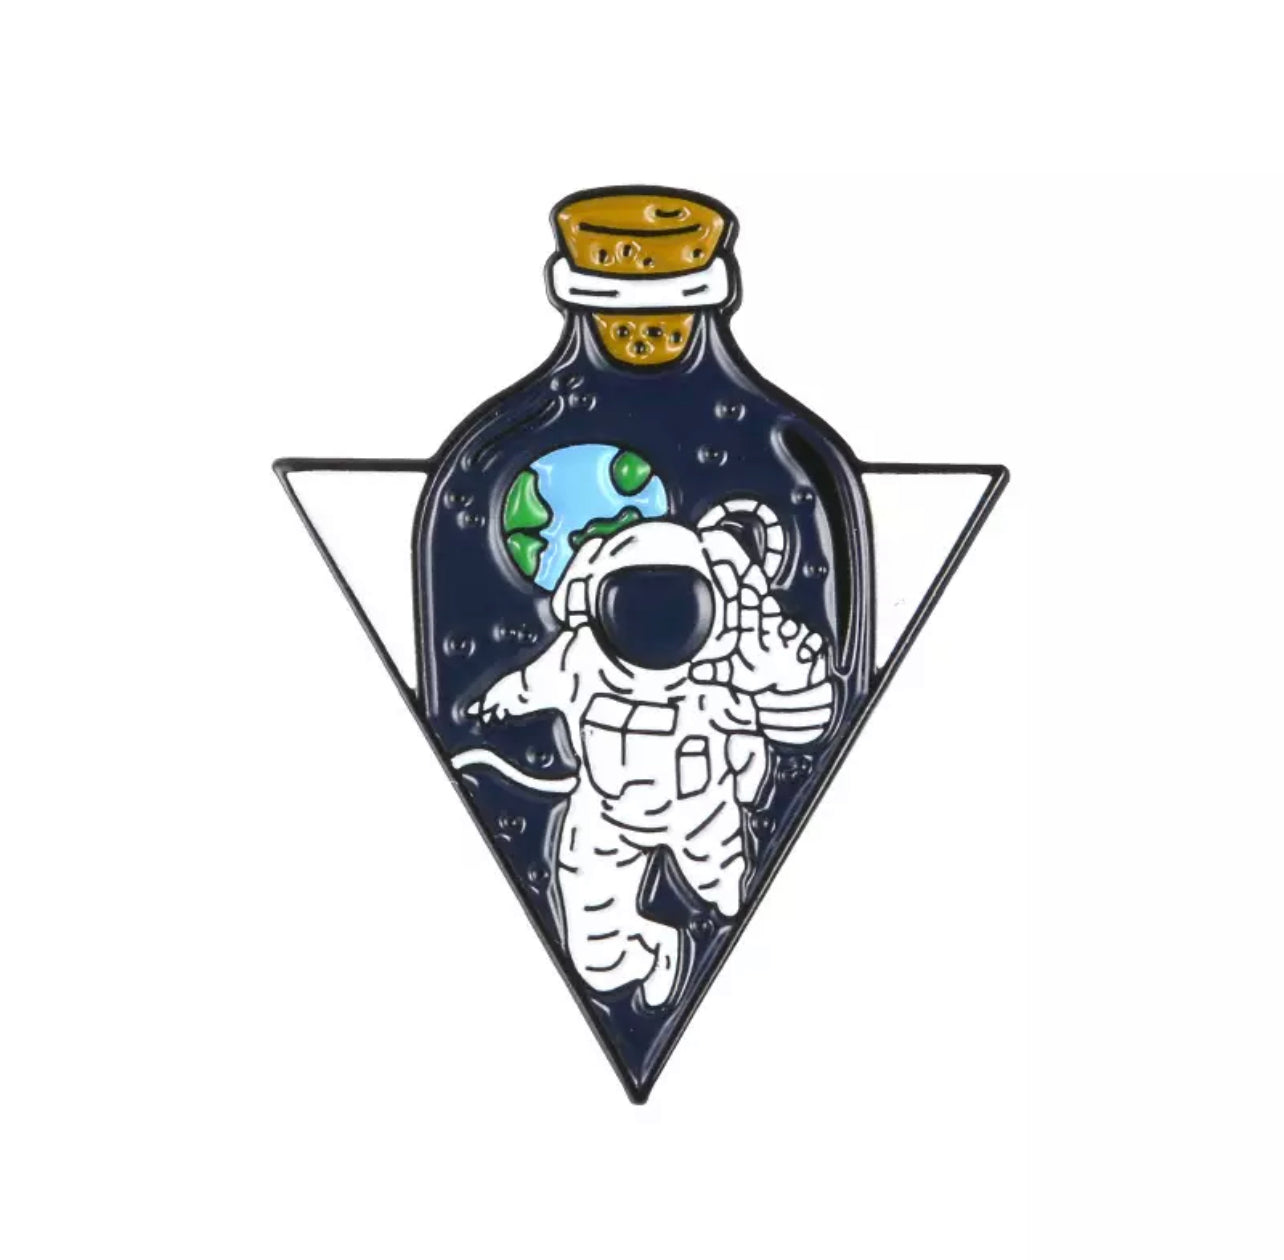 Astronaut bottle